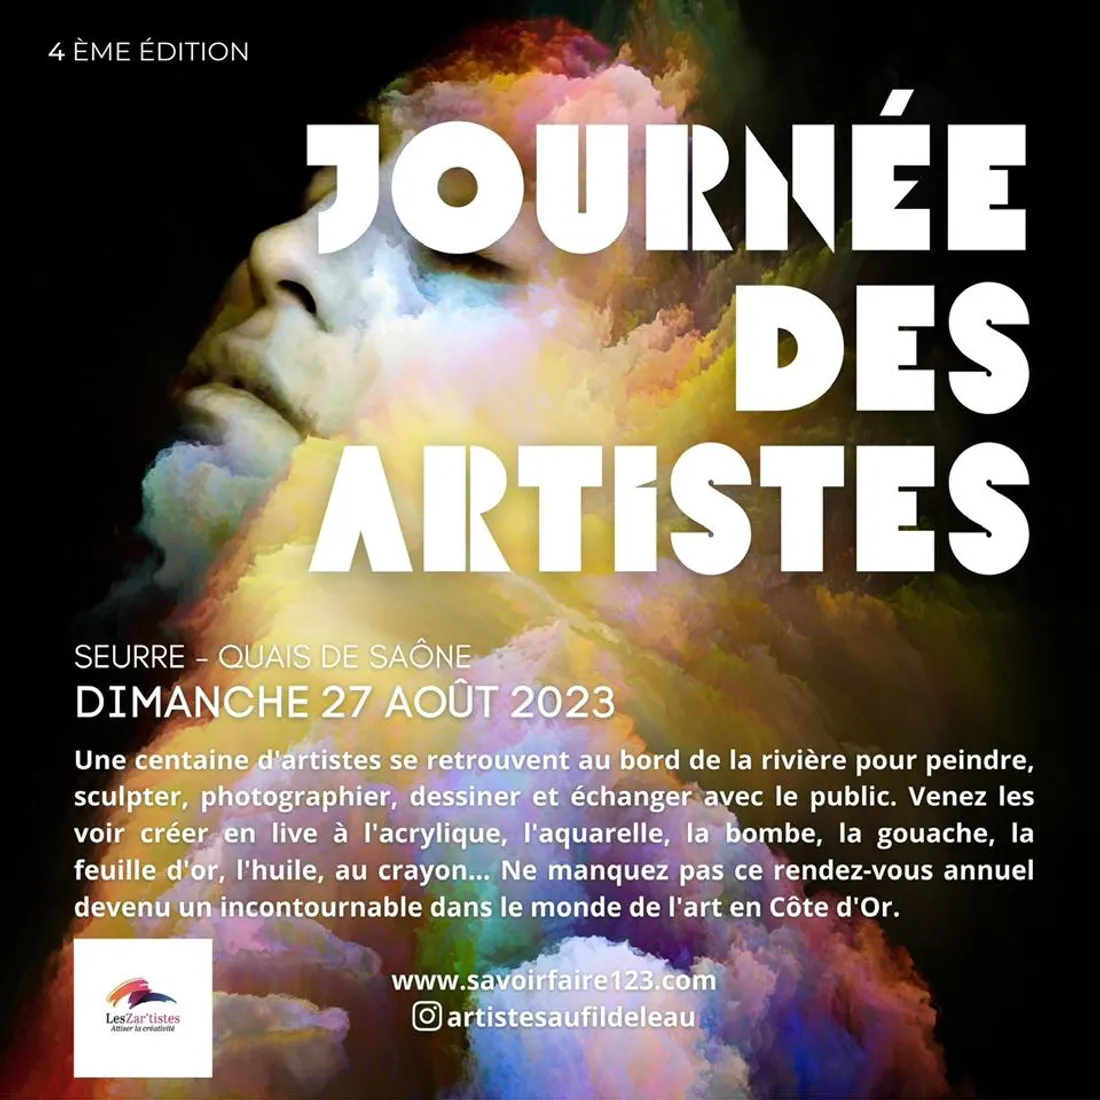 La 4ème édition de la journée des artistes a lieu le dimanche 27 août à Seurre.  